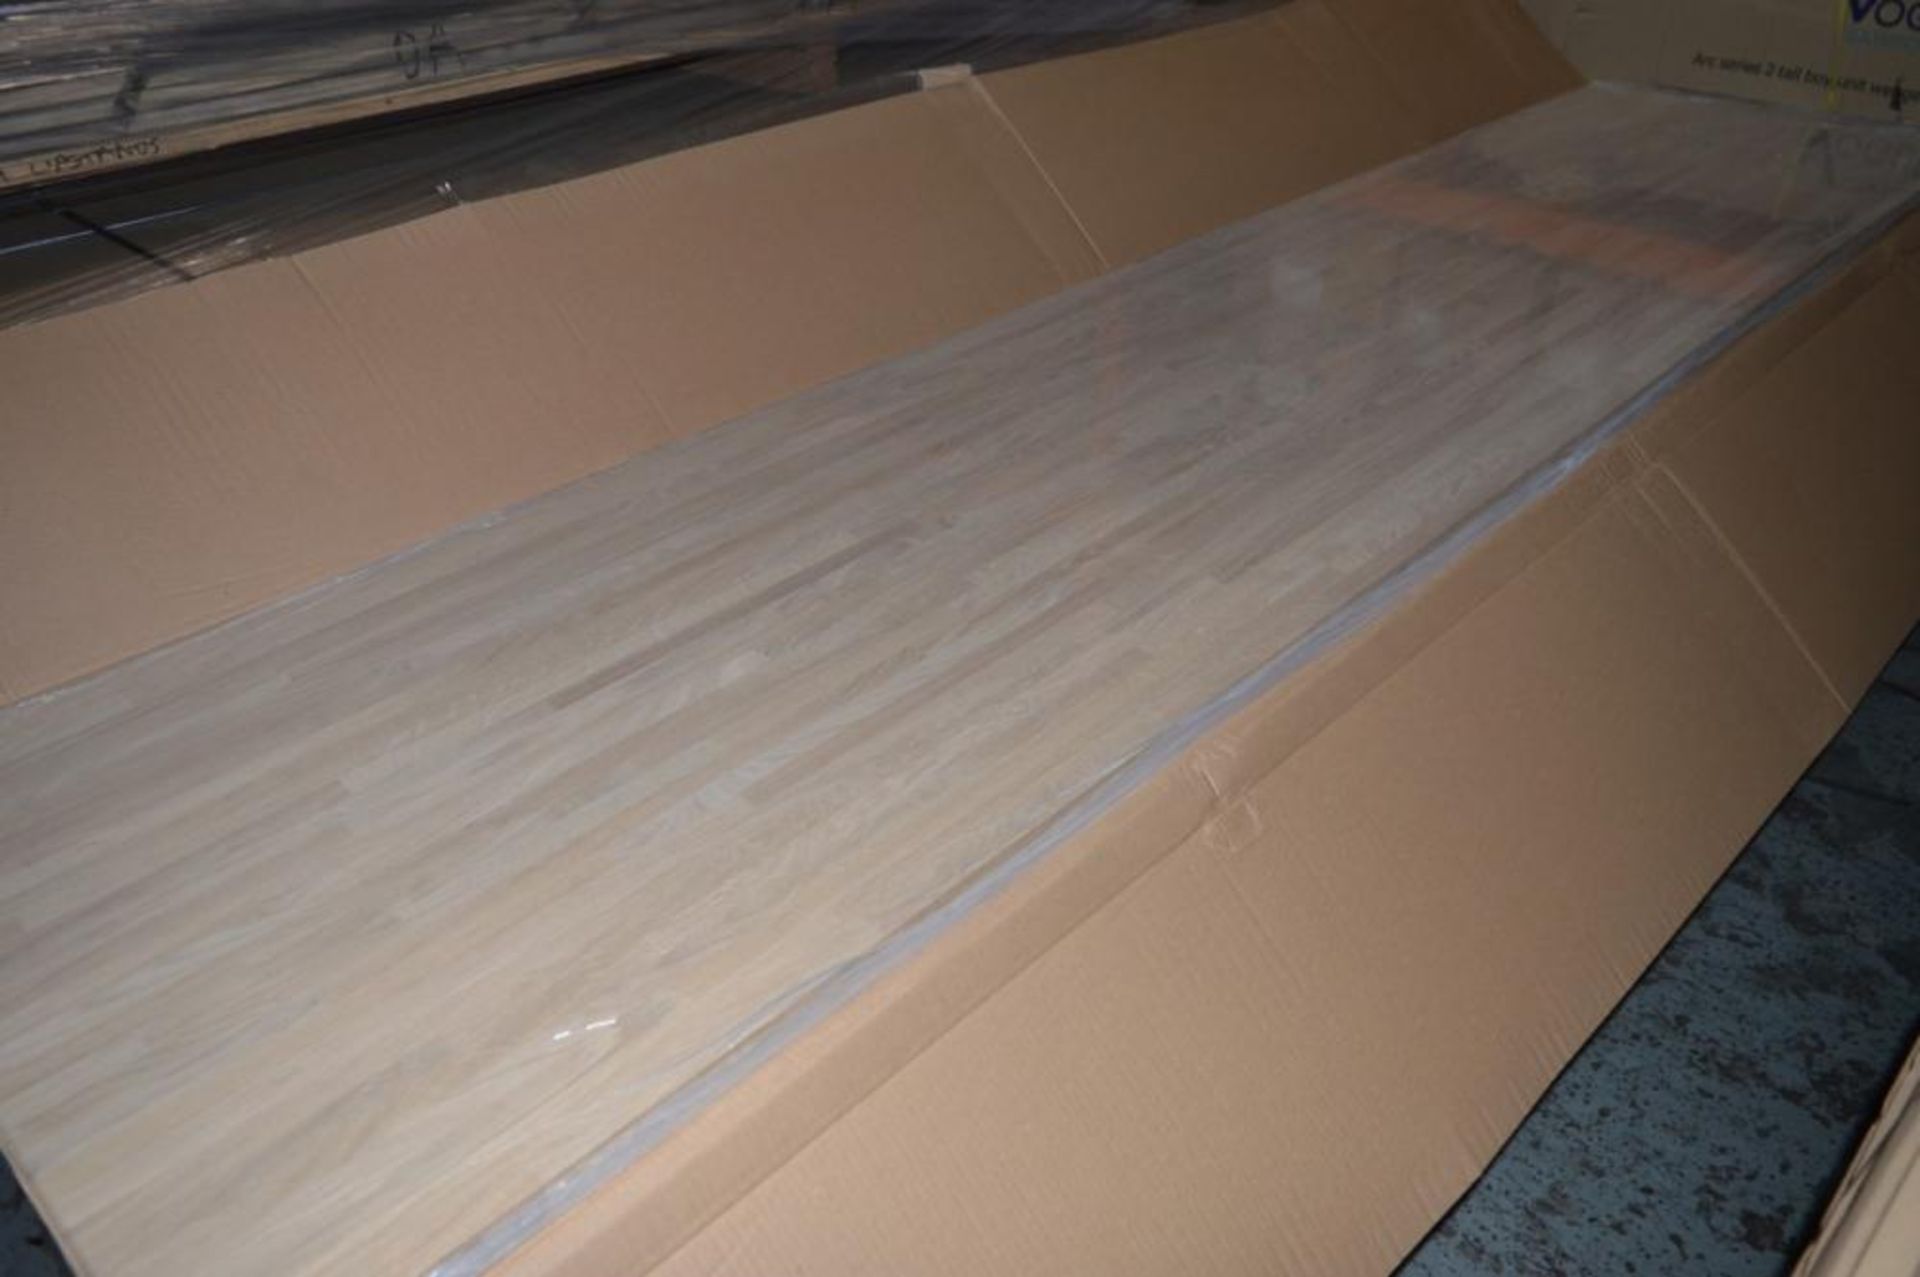 1 x Solid Wood Kitchen Worktop - OAK - Oak Blockwood Kitchen Worktop - Size: 3000 x 900 x 32mm - Unt - Image 2 of 6